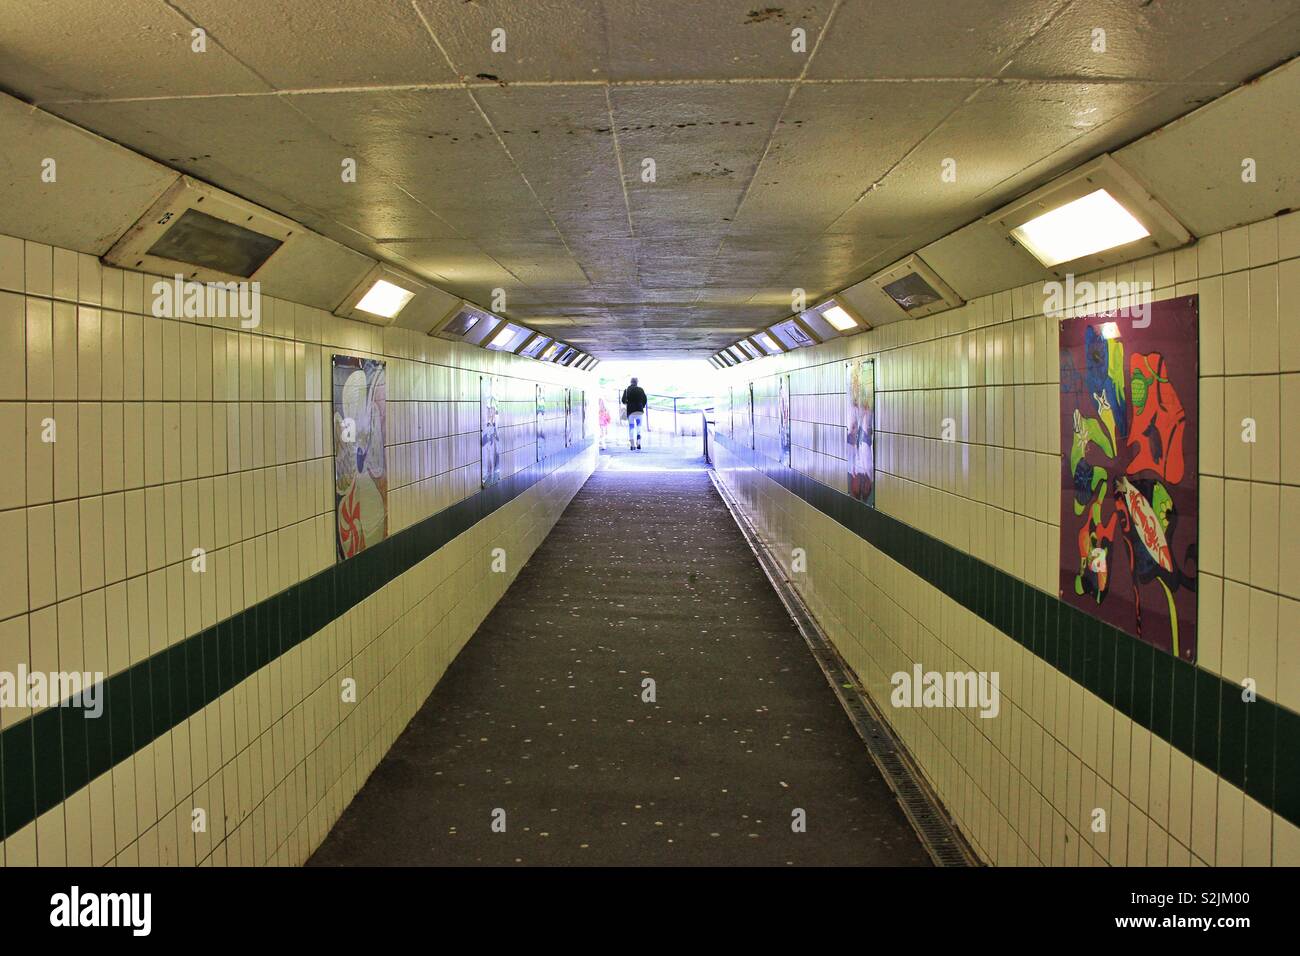 Einsame Figur in der Nähe der U-Bahn in bunten Licht sonnte sich mit Kunstwerken auf Anzeige auf gefliesten Wänden Stockfoto